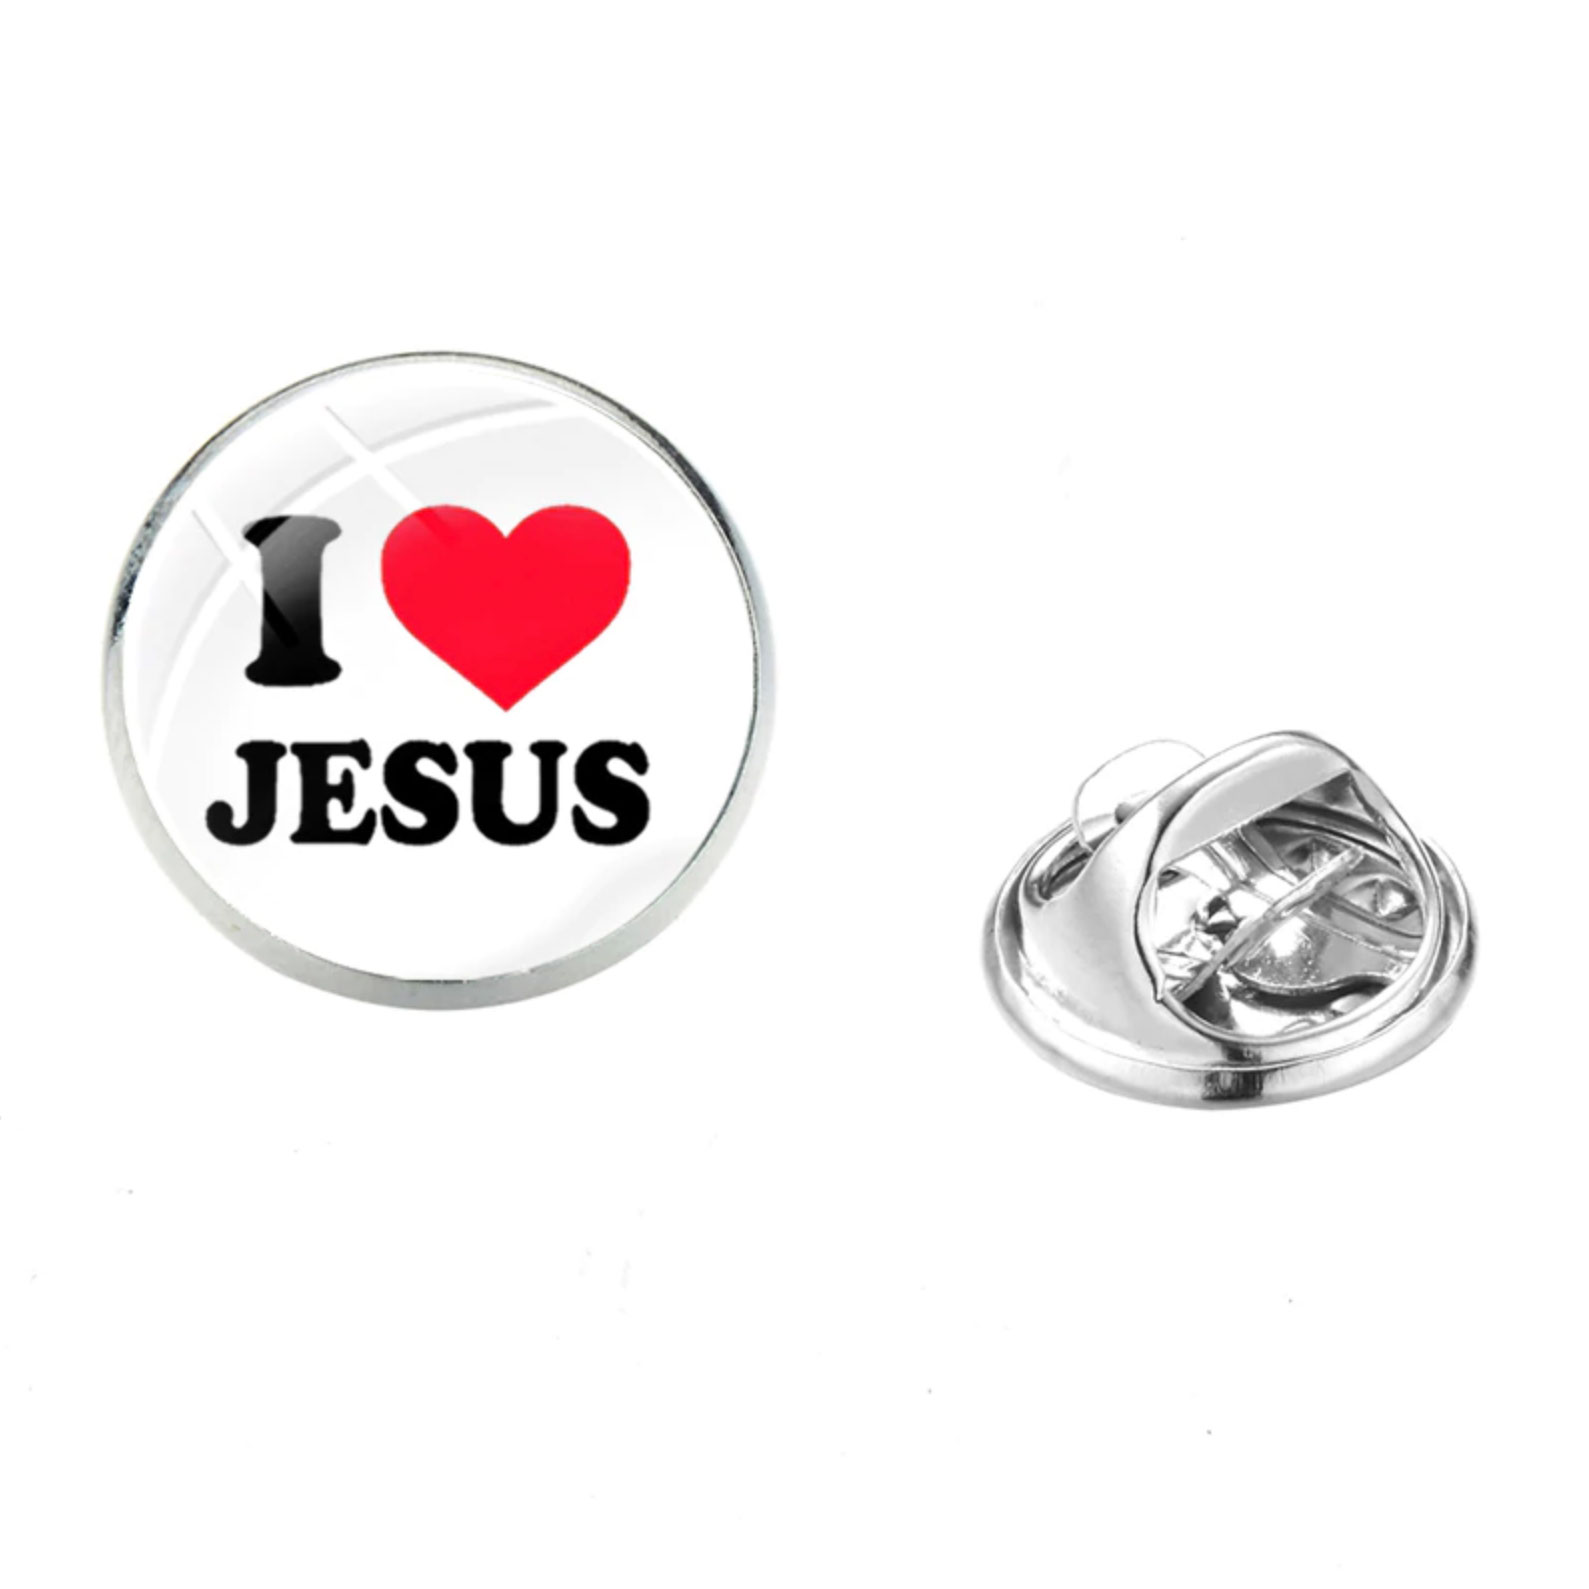 Значок на цанге - I love Jesus